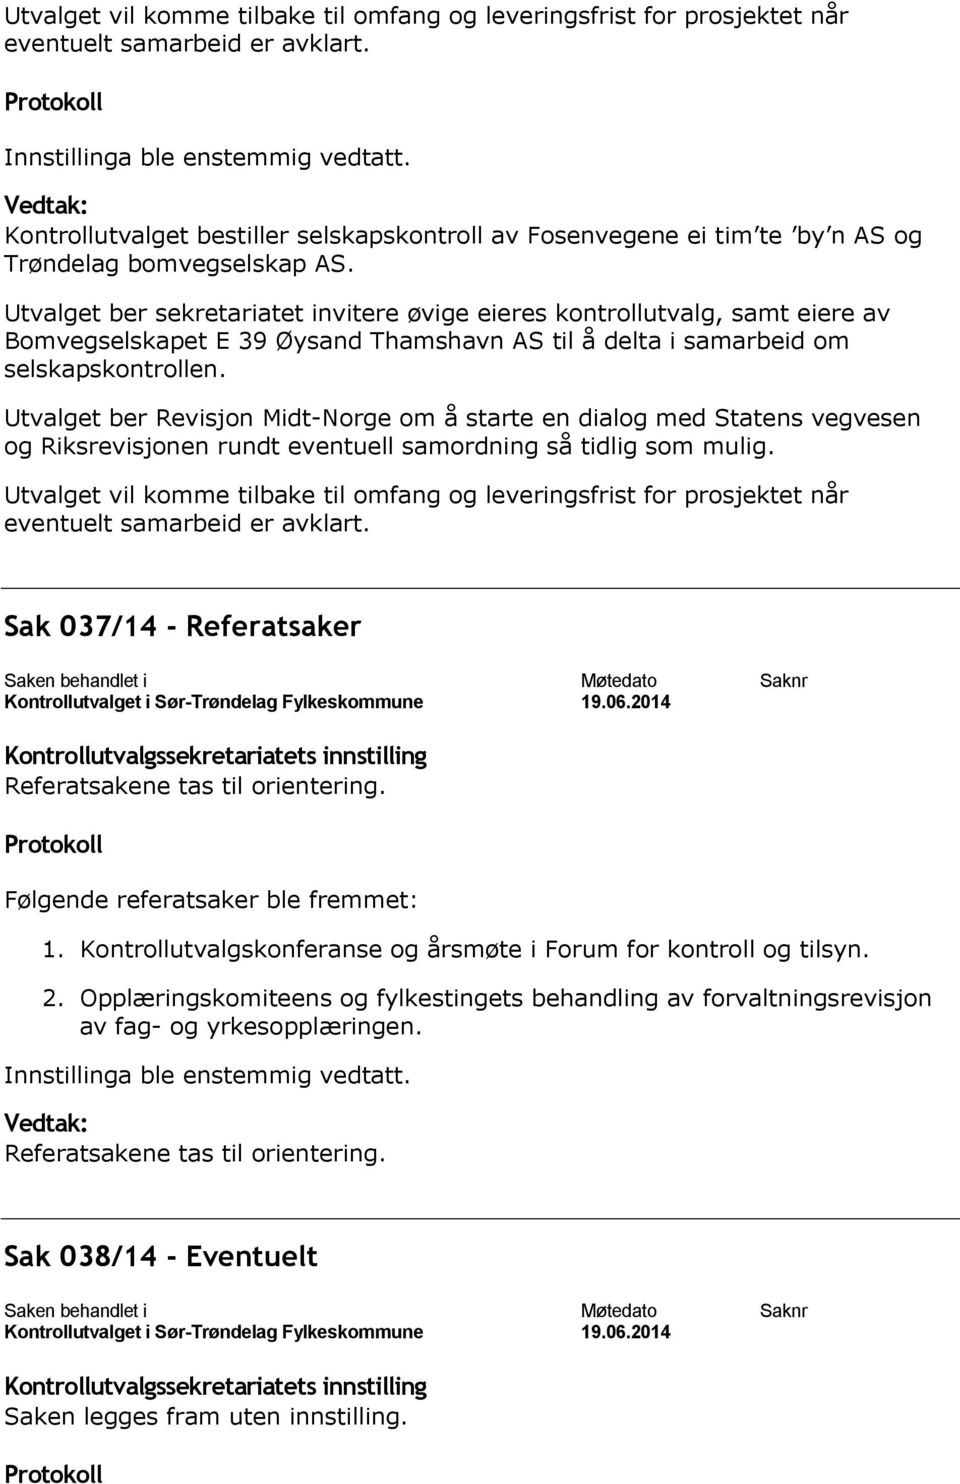 Utvalget ber sekretariatet invitere øvige eieres kontrollutvalg, samt eiere av Bomvegselskapet E 39 Øysand Thamshavn AS til å delta i samarbeid om selskapskontrollen.